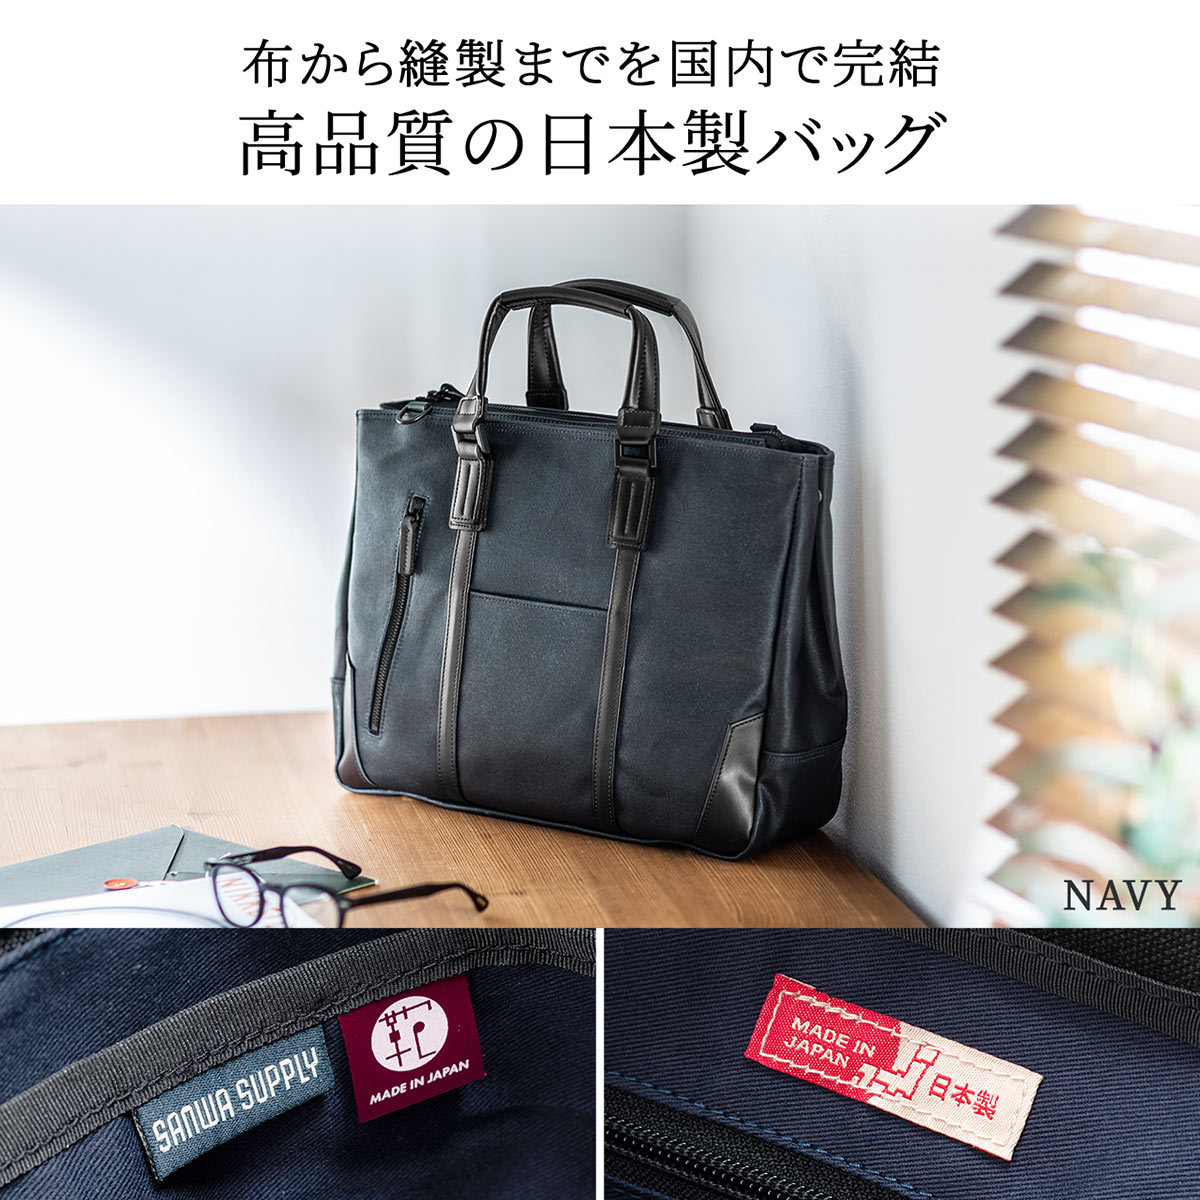 ビジネスバッグ メンズ 日本製 豊岡鞄 倉敷帆布 カバン 本革 牛革 